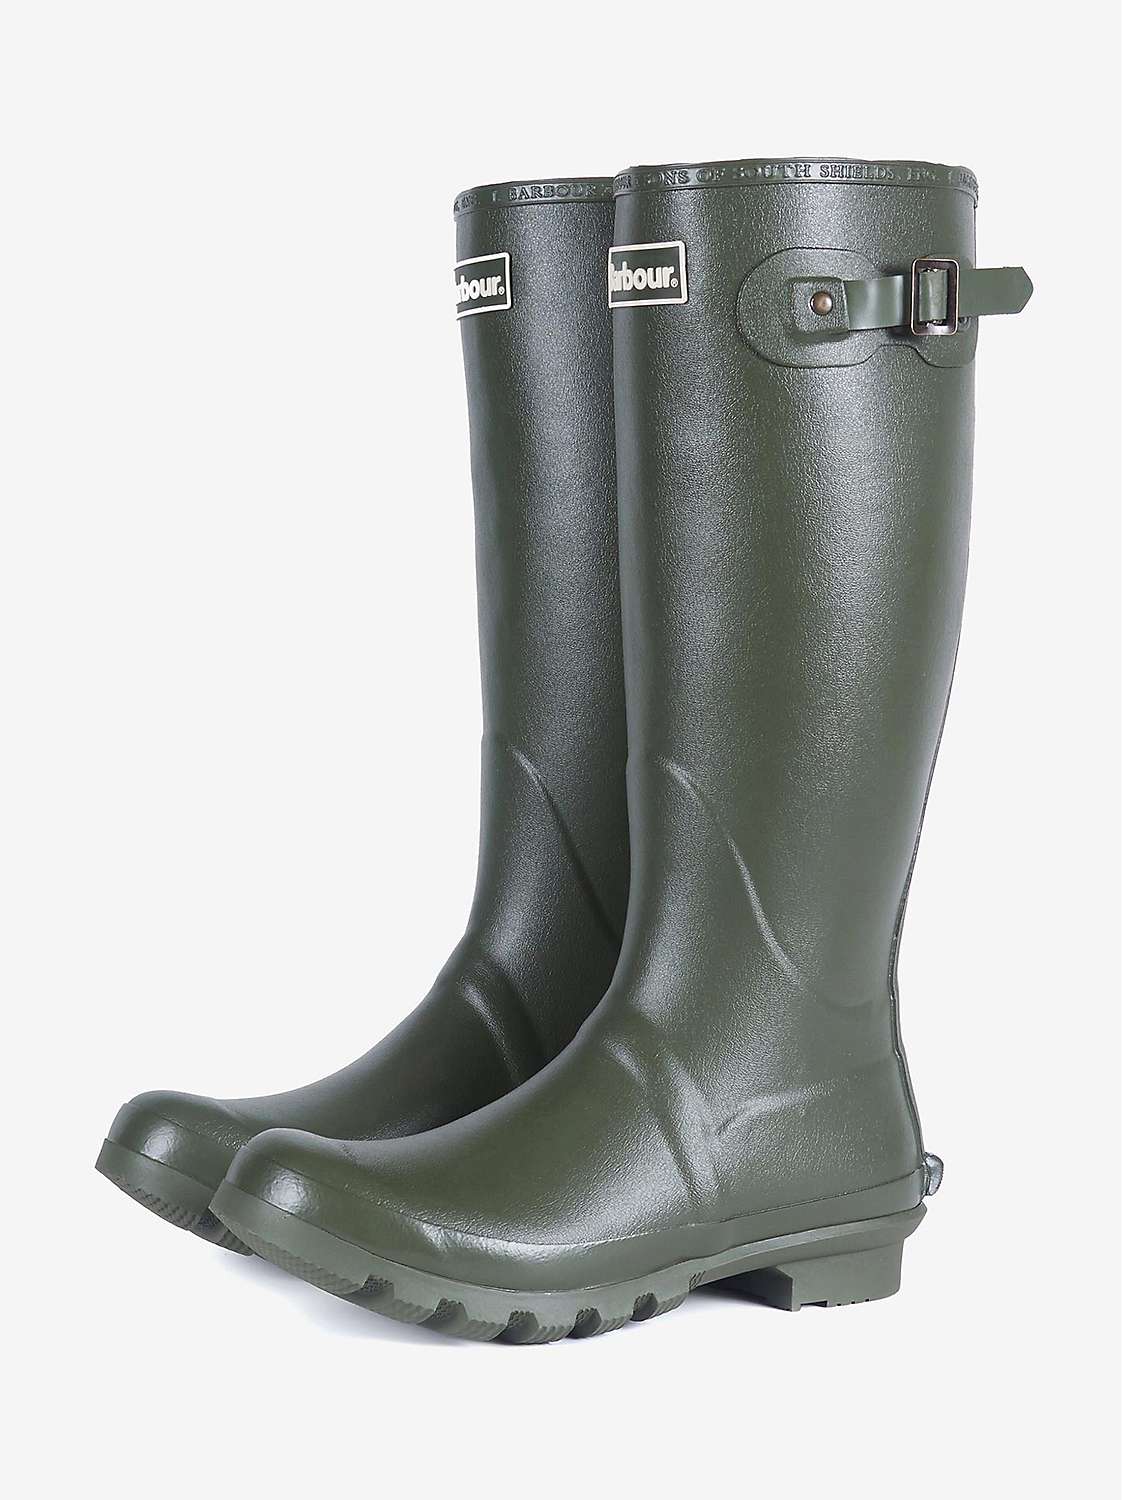 Buy Barbour Bede Waterproof Wellington Boots Online at johnlewis.com